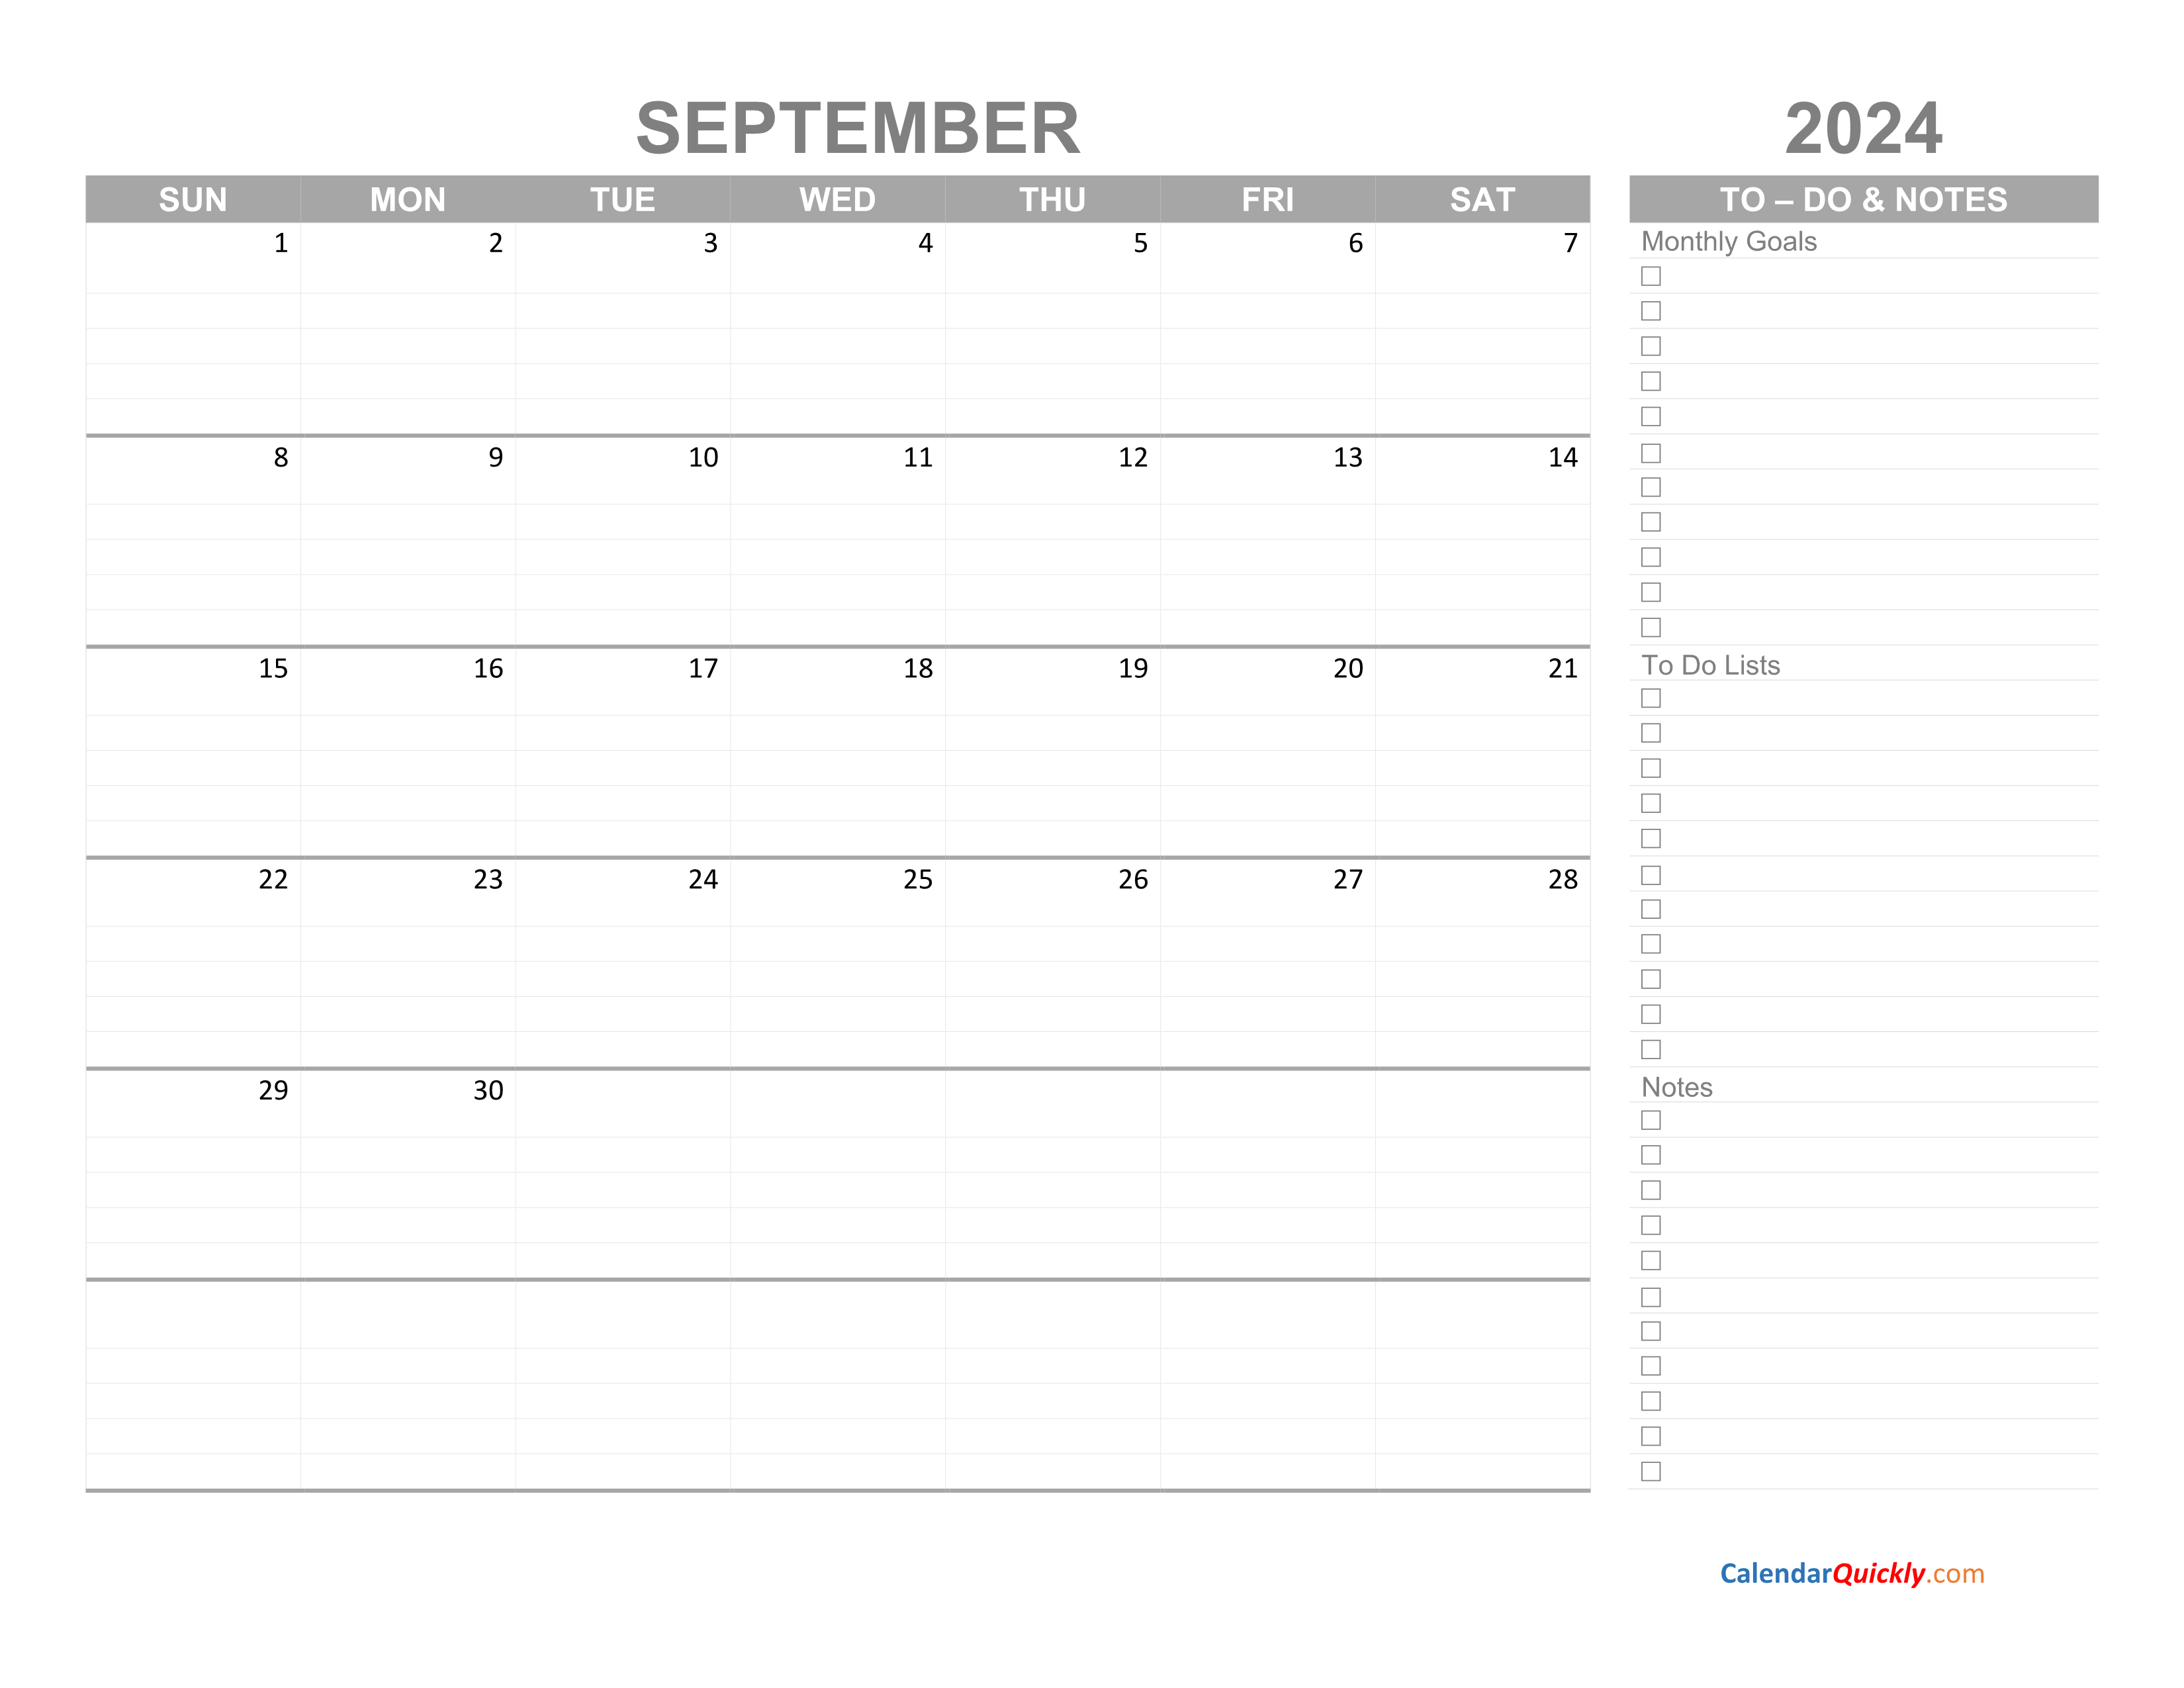 September 2024 Calendar with To-Do List | Calendar Quickly